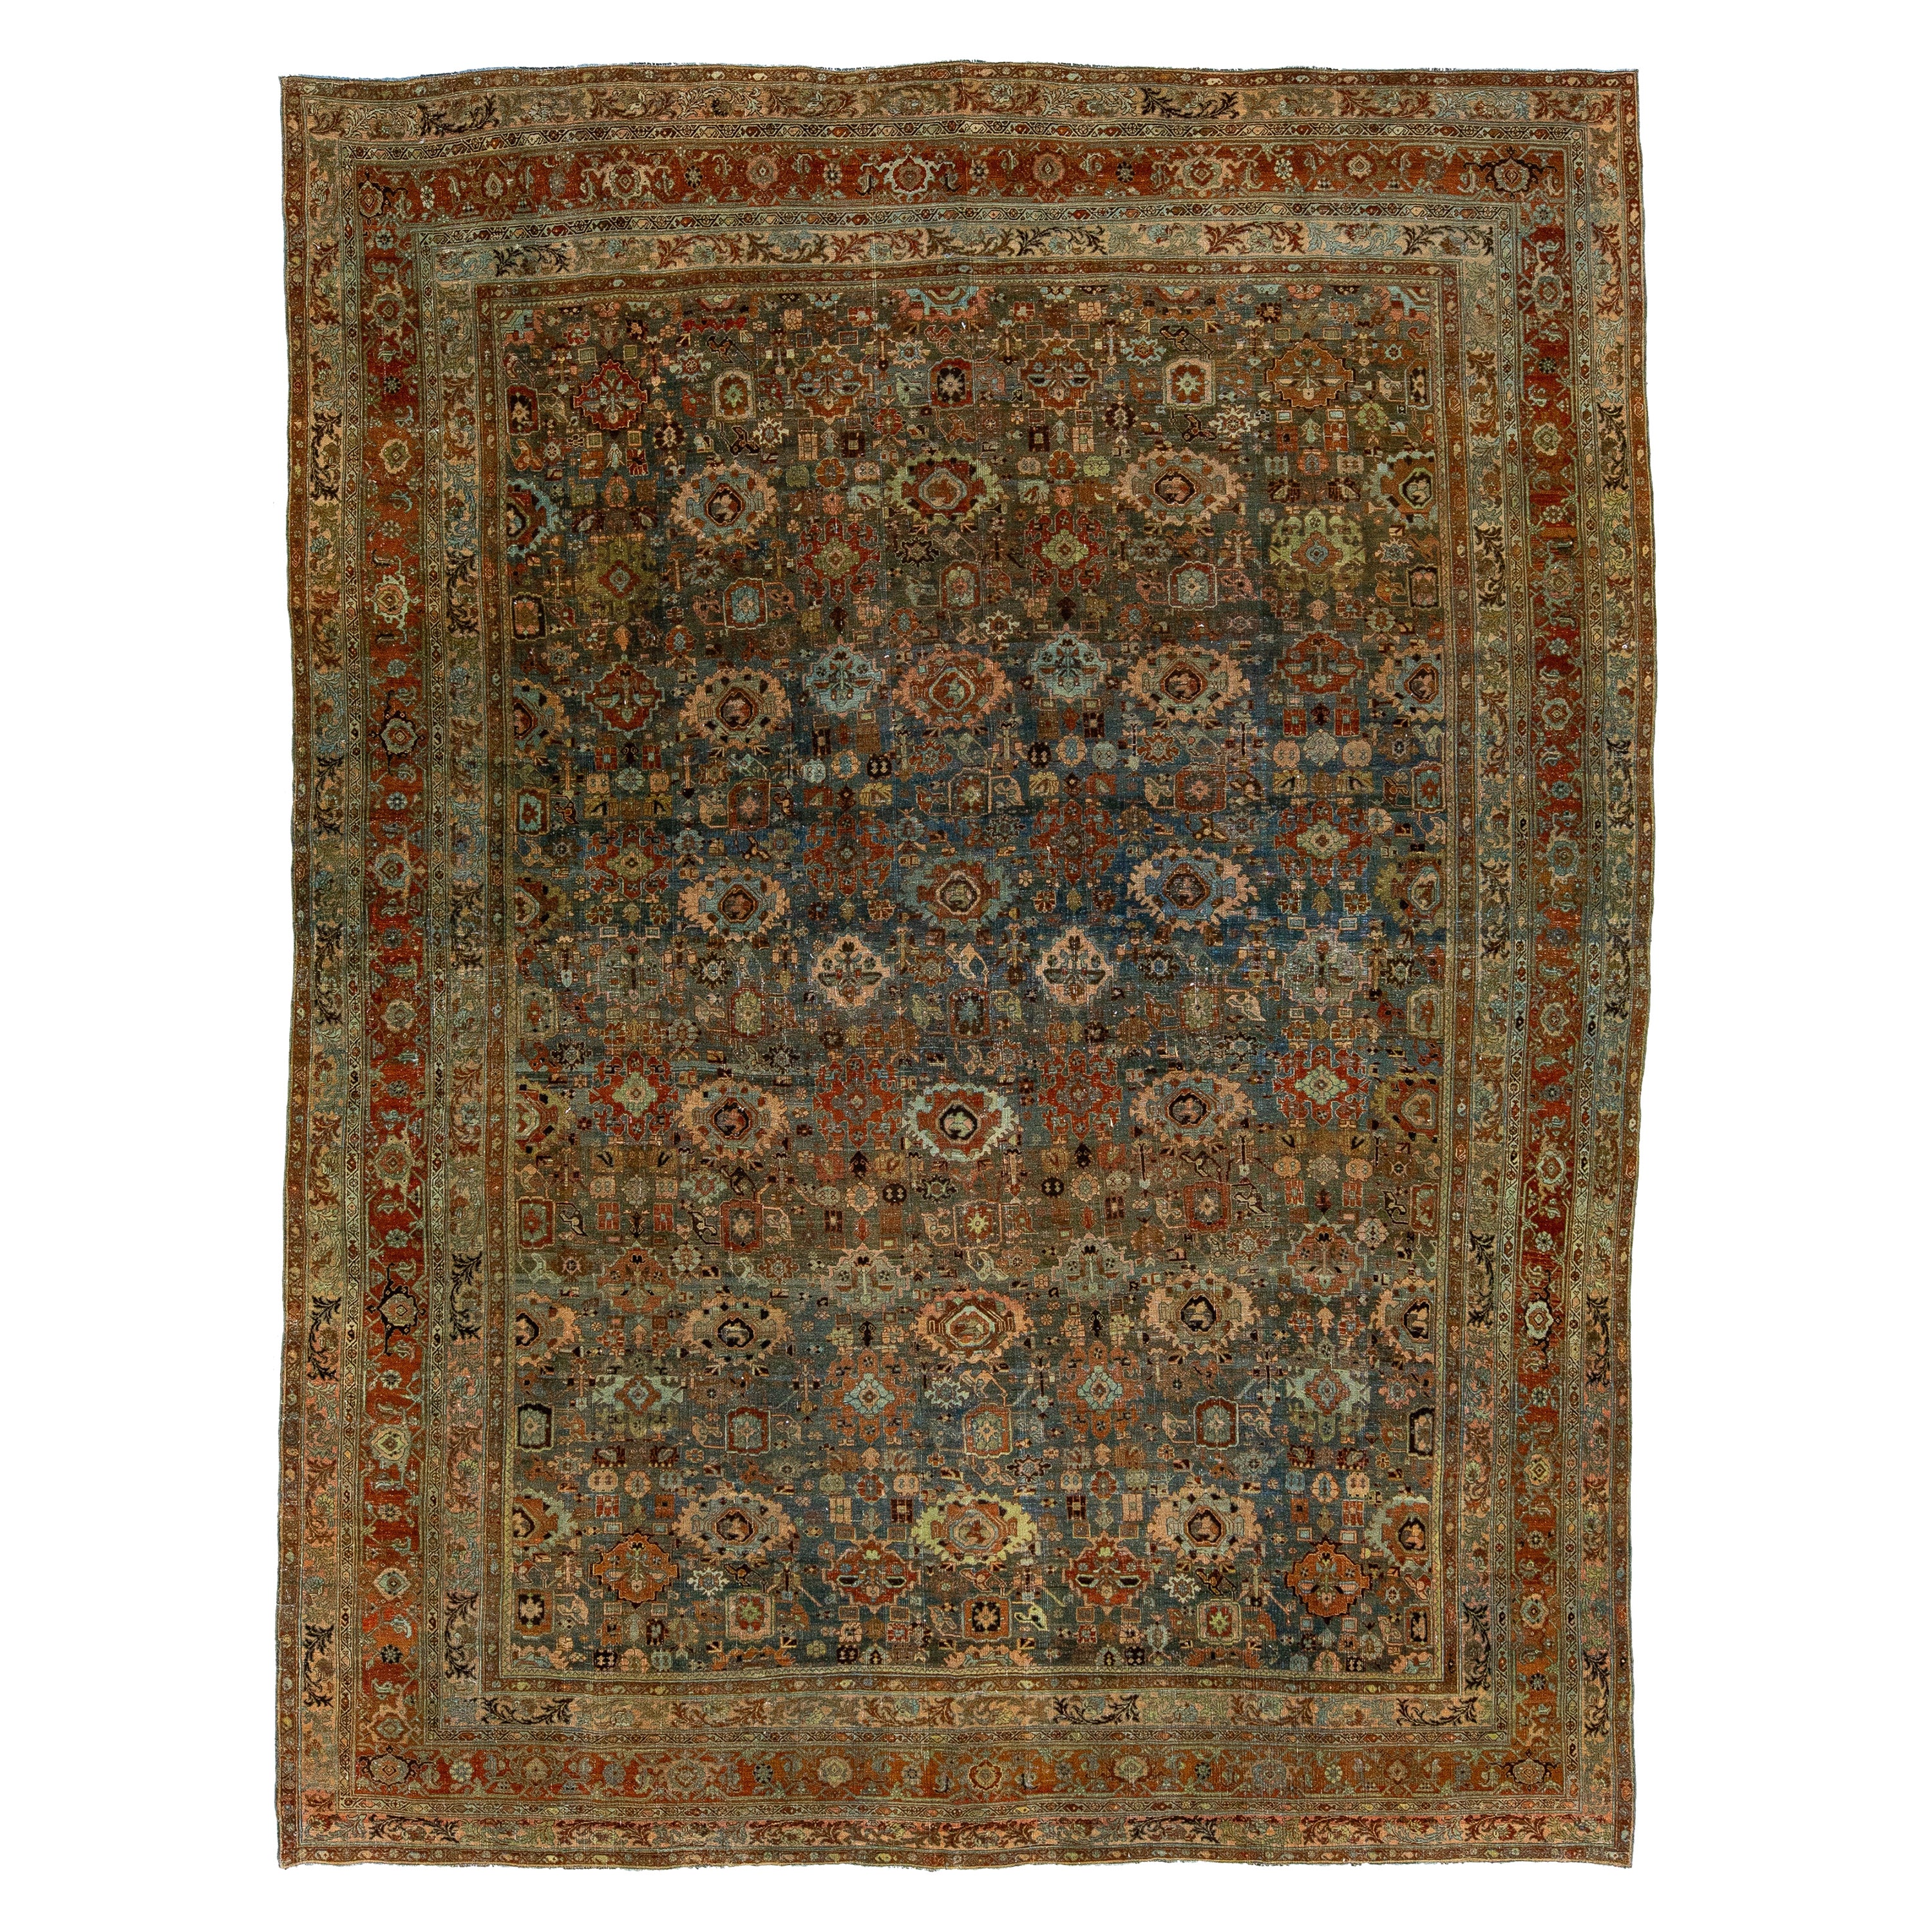 1890s Antique Bidjar Handmade Floral Wool Rug In Blue